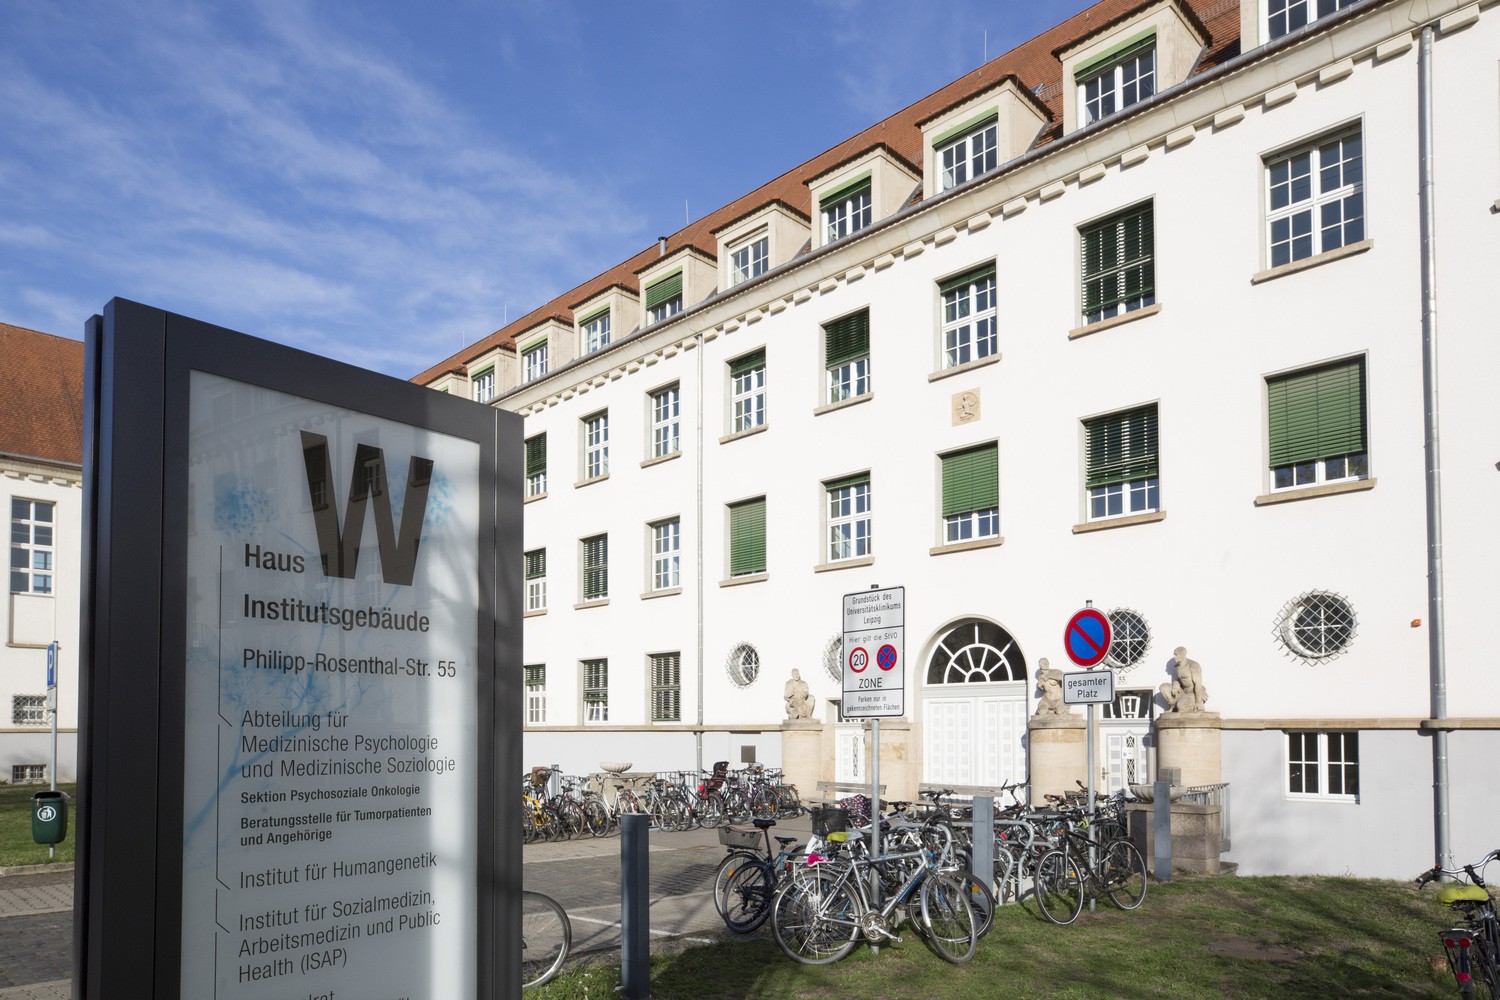 Hier im Institutsgebäude in der Philipp-Rosenthal-Straße 55 befindet sich die Beratungsstelle für Tumorpatienten und Angehörige, die nun zwei Jahrzehnte ihres Bestehens feiert.